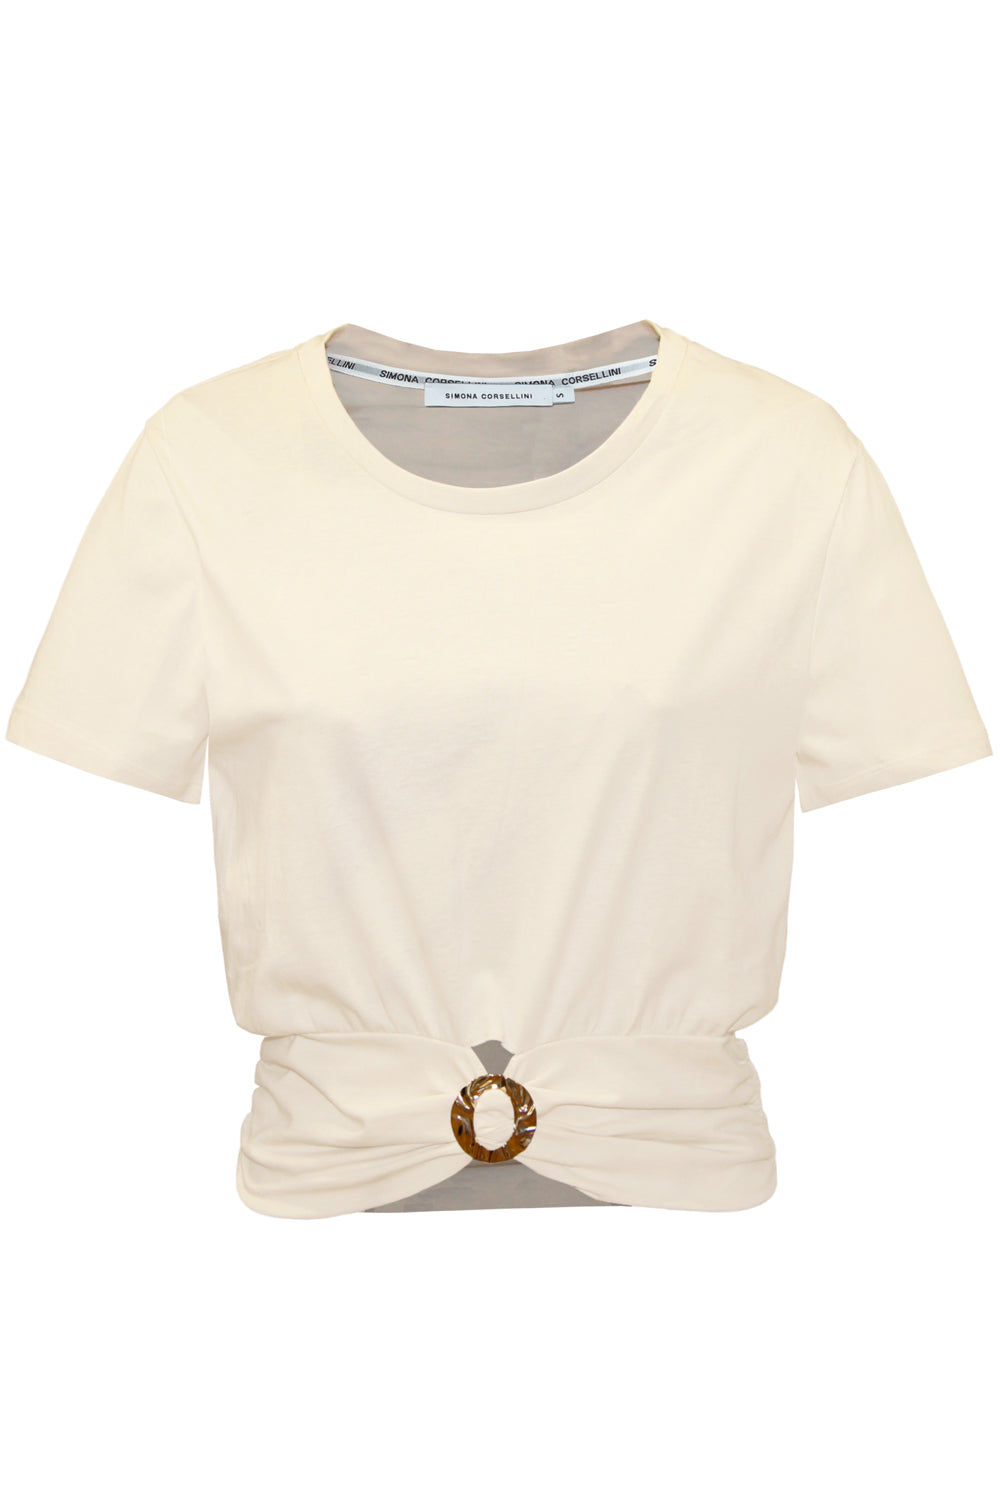 SIMONA CORSELLINI T-shirt con accessorio oro